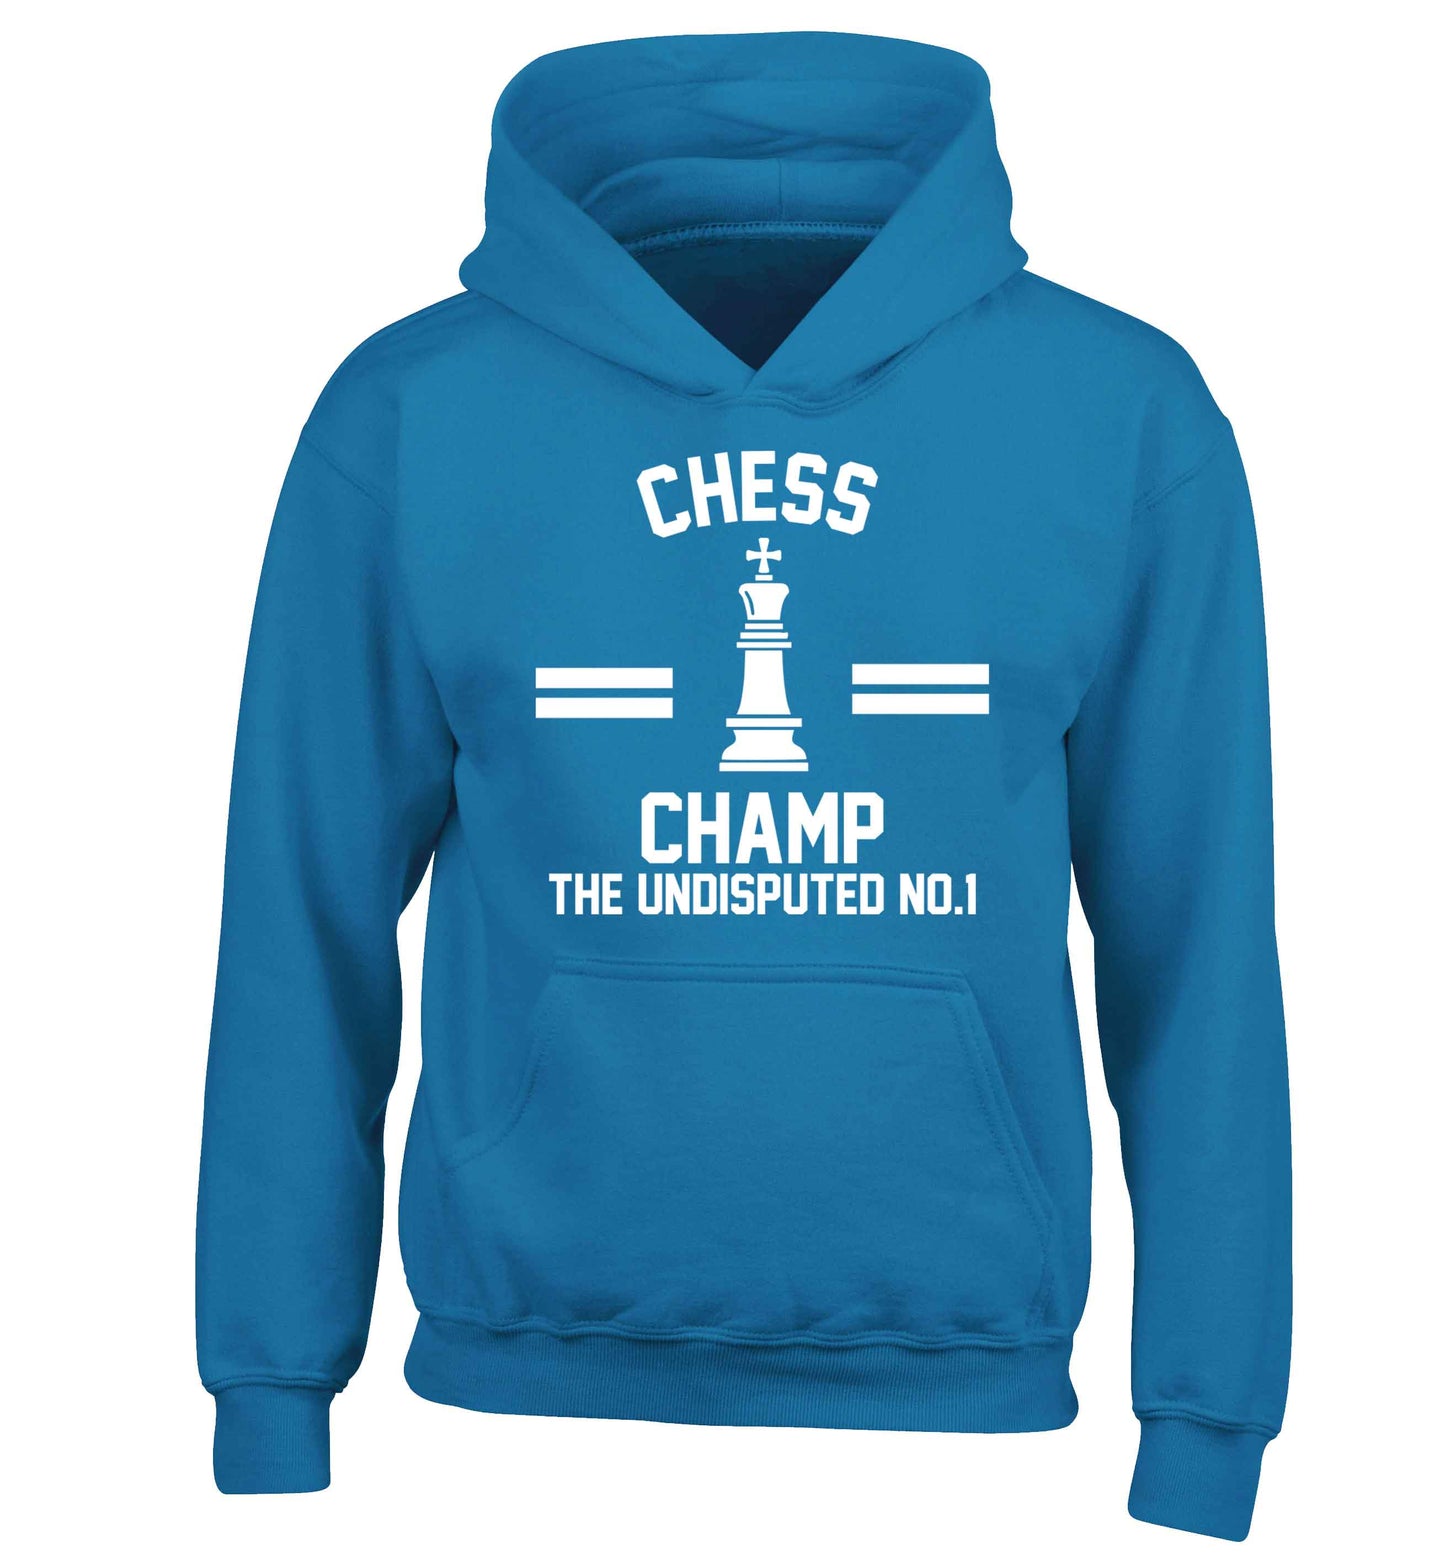 Undisputed chess championship no.1  children's blue hoodie 12-13 Years